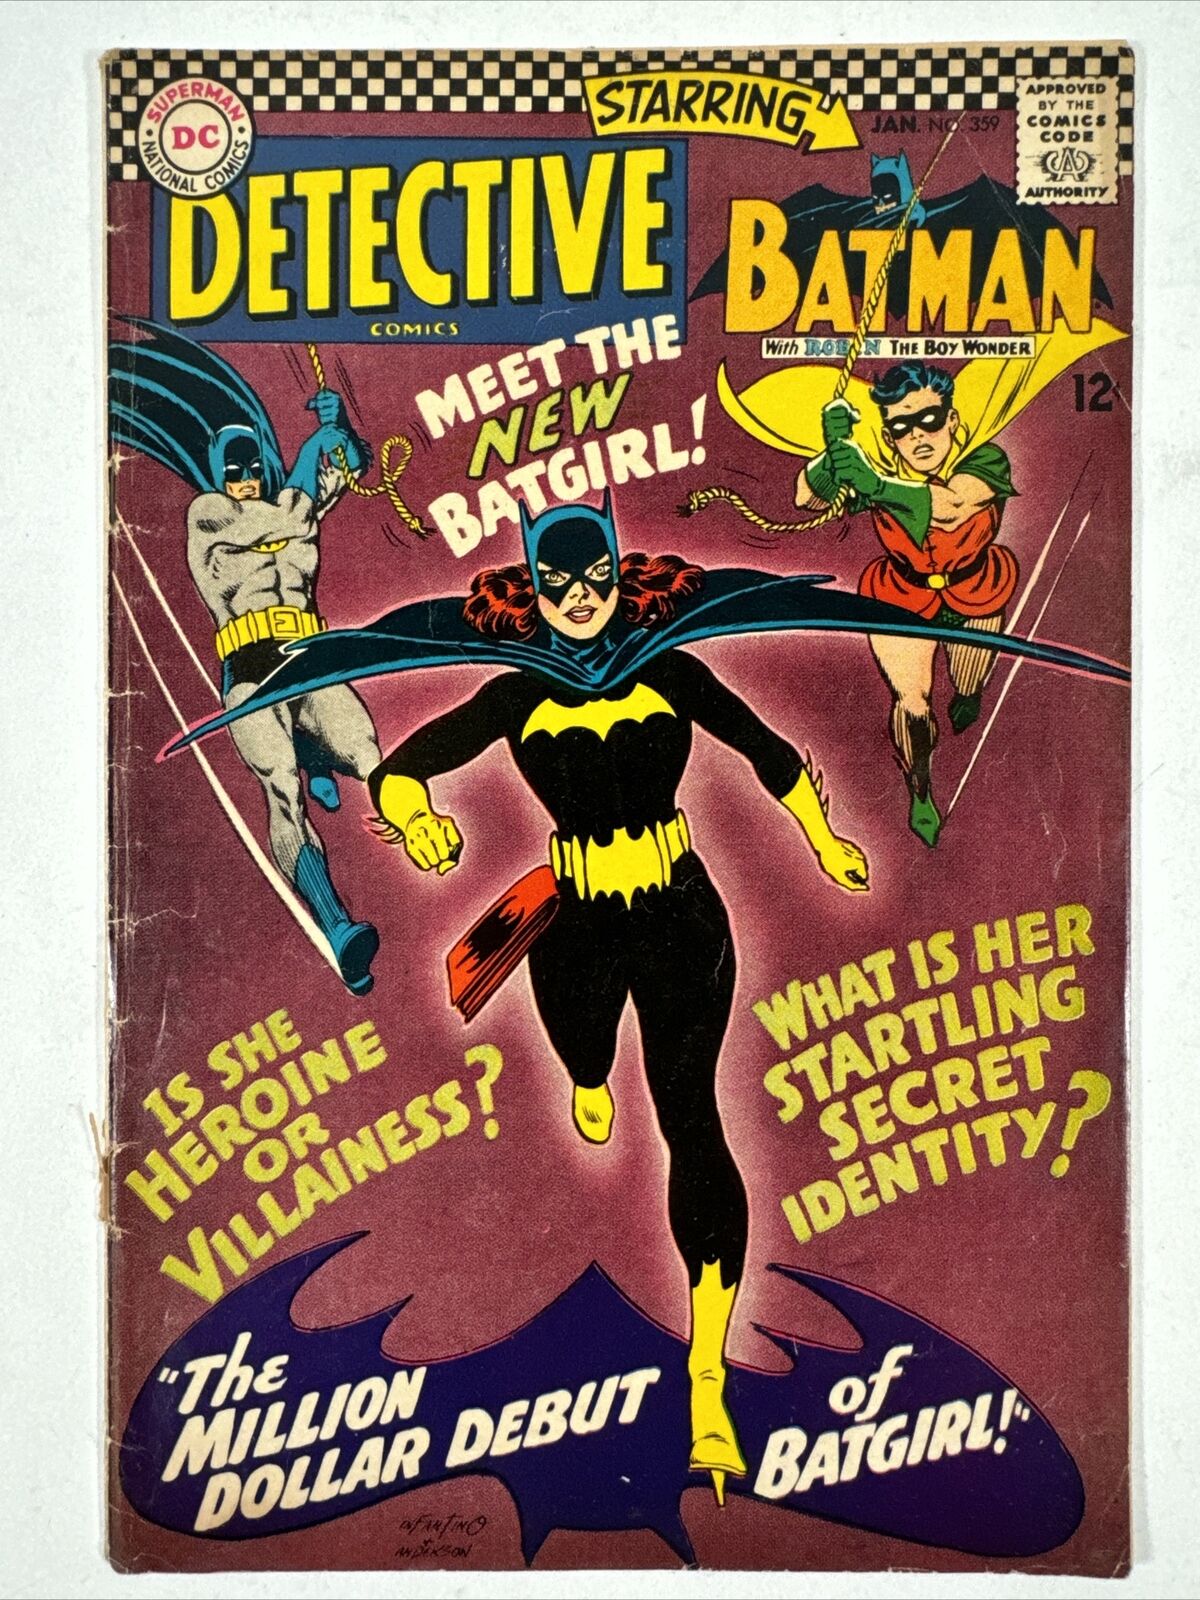 VINTAGE  1/1967 BATMAN DETECTIVE COMICS #359 1st App. NEW BATGIRL Barbara Gordon